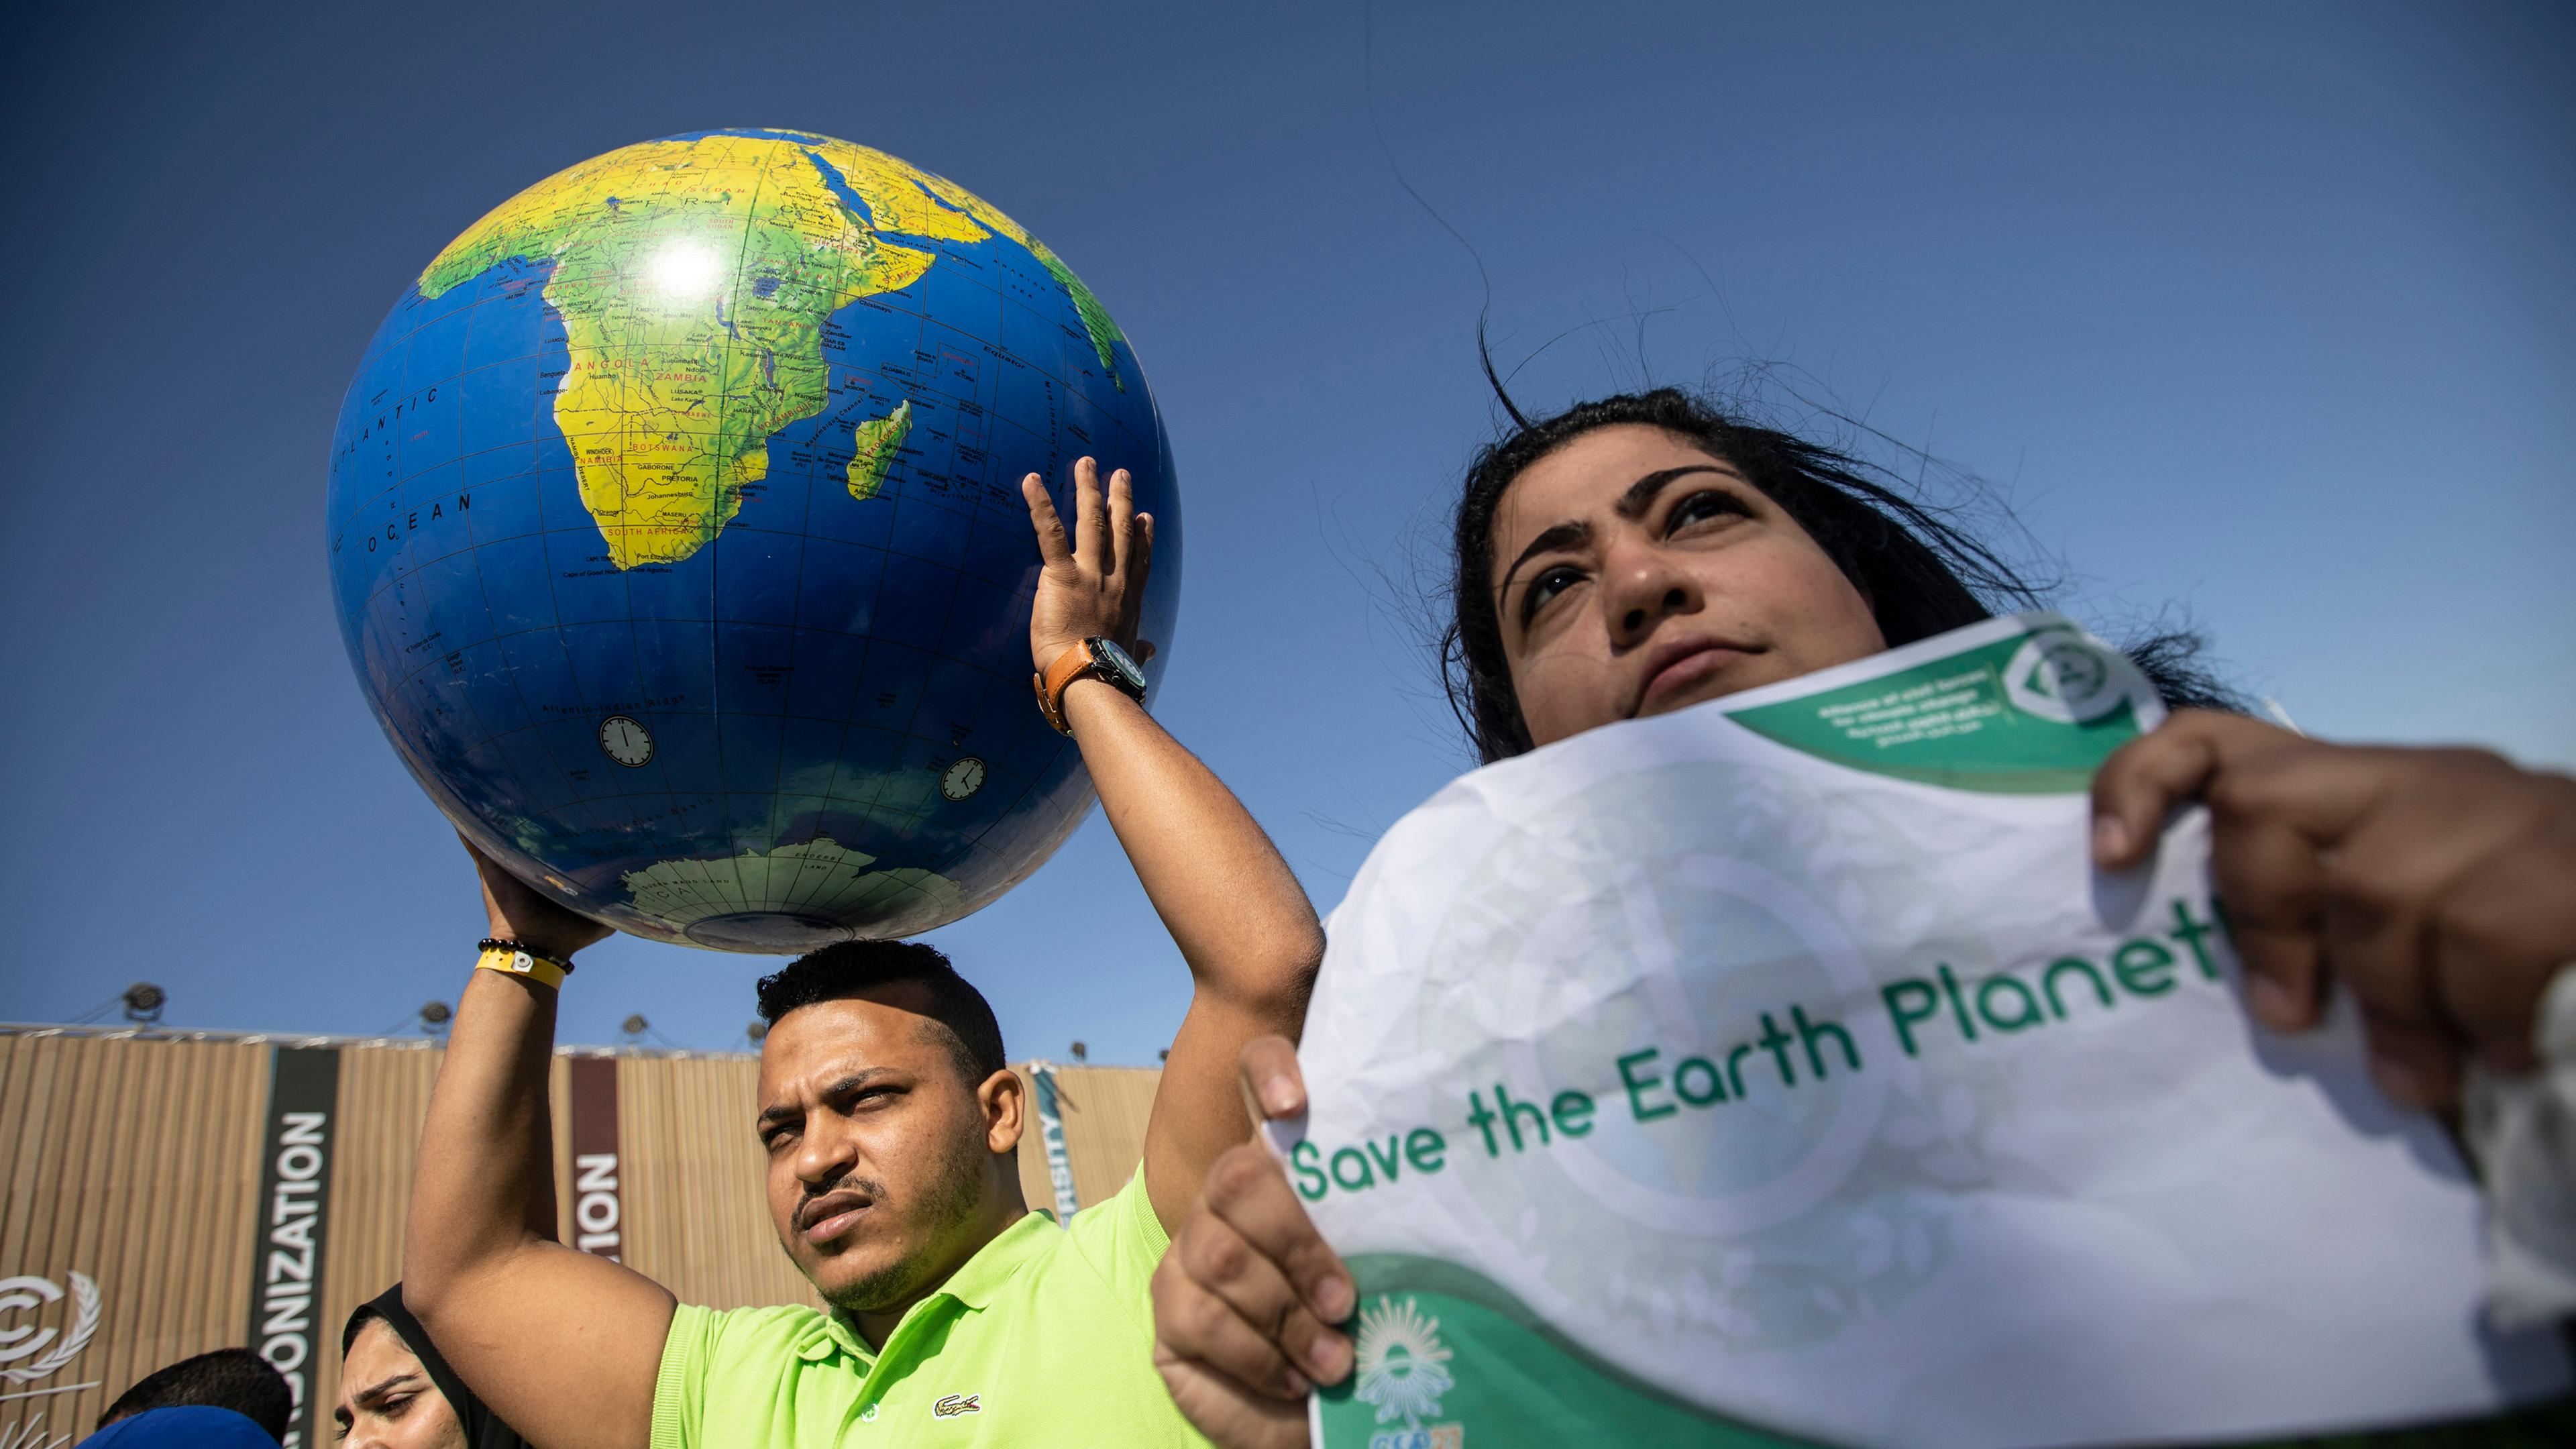 Am Rande der UN-Weltklimakonferenz COP27 halten Demonstranten eine Weltkugel hoch und rufen Slogans während einer Demonstration der ägyptischen Allianz der zivilen Kräfte für den Klimawandel.